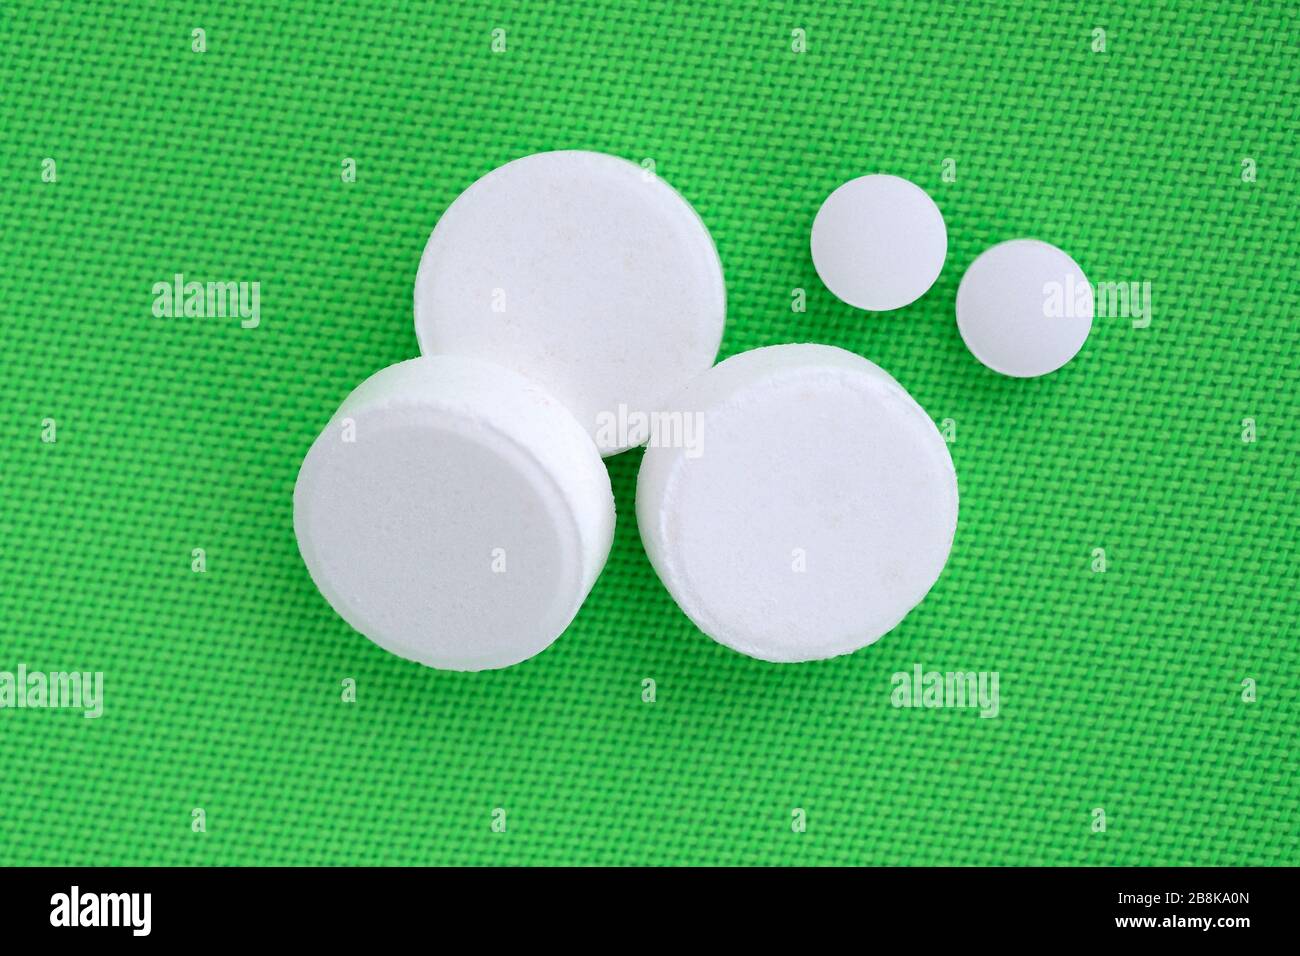 Drei große weiße Pillen und zwei kleine Pillen auf grünem Hintergrund. Weiße Pillen unterschiedlicher Größe werden von oben angezeigt. Runde Pillen, Medikamente. Stockfoto